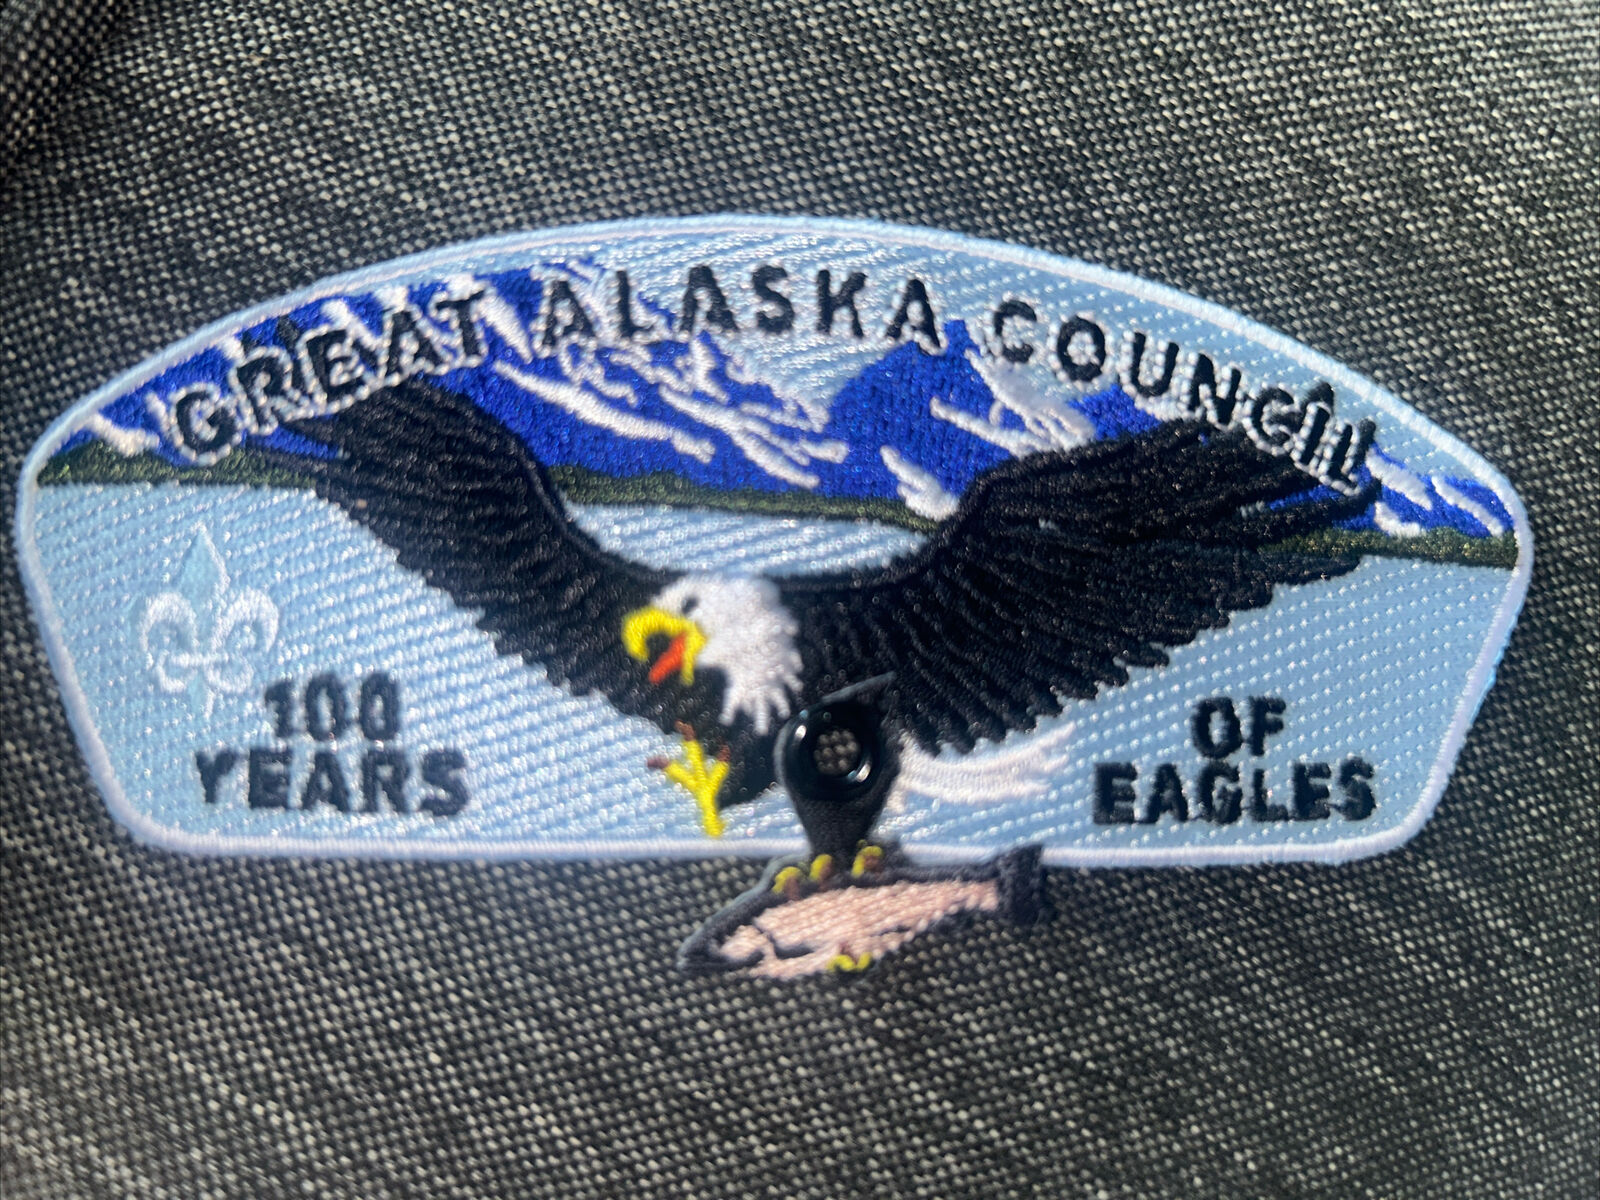 MINT CSP Great Alaska Council 100 Years of Eagles 2010 SA-23